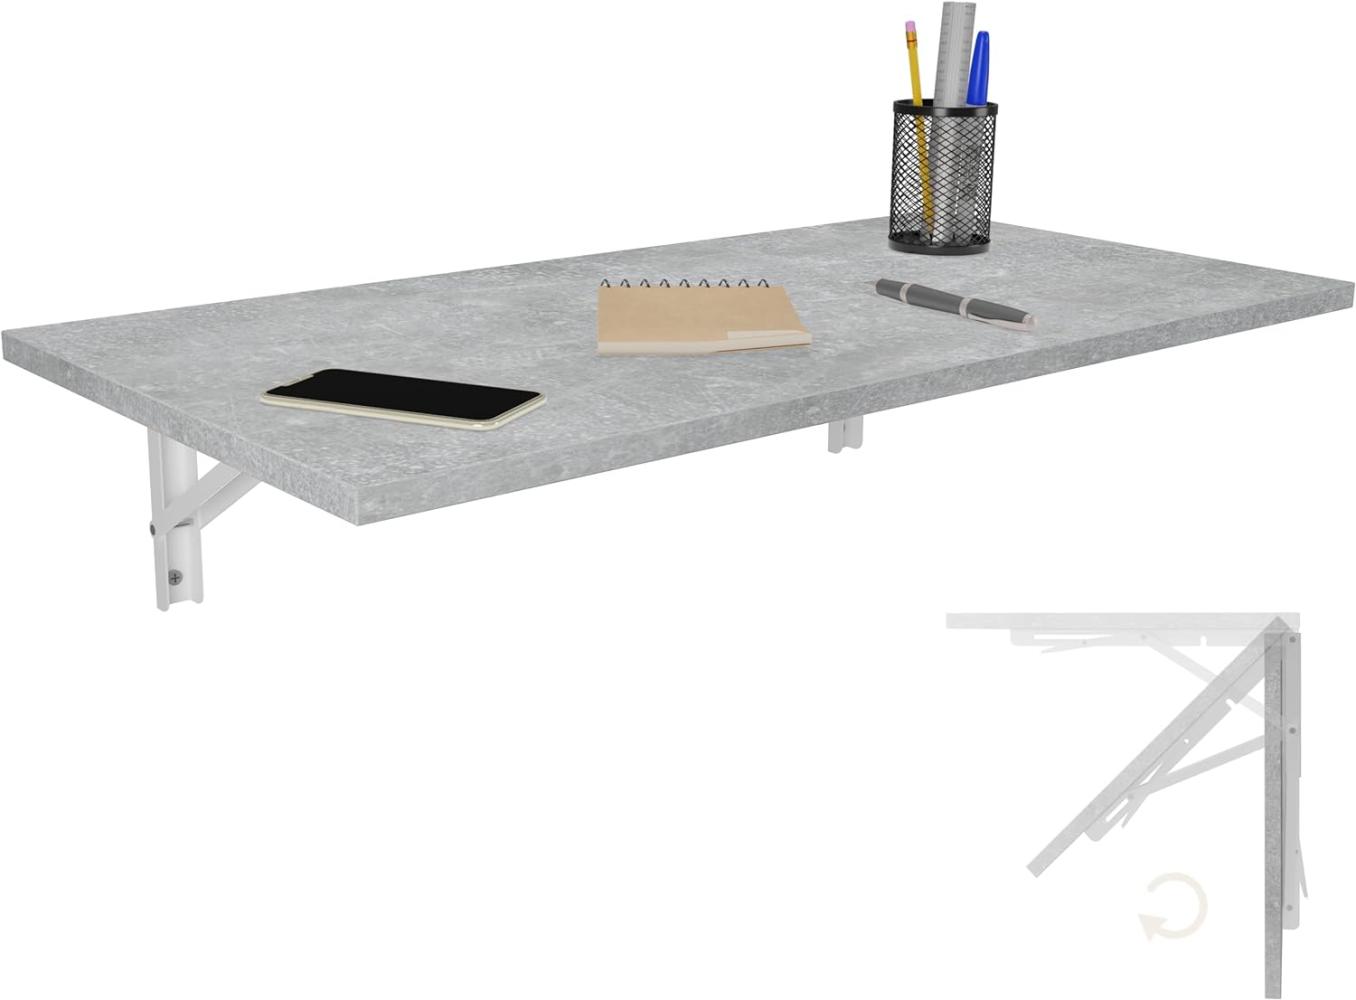 Wandklapptisch Schreibtisch Tischplatte 80x40 cm in Beton Klapptisch Esstisch Küchentisch für die Wand Bartisch Stehtisch Wandtisch Tisch klappbar zur Wandmontage im Büro Küche Bild 1